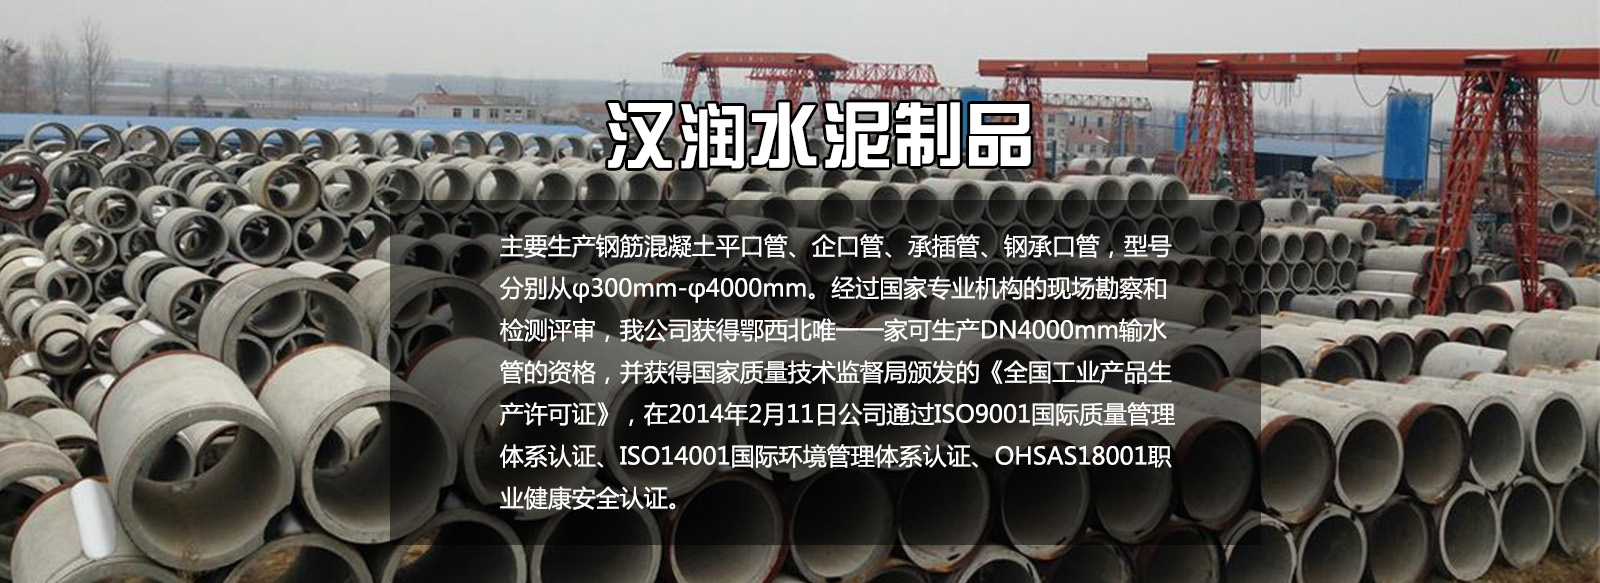 襄阳水泥管技术更成熟性价比更高郑州水泥管的接口形式